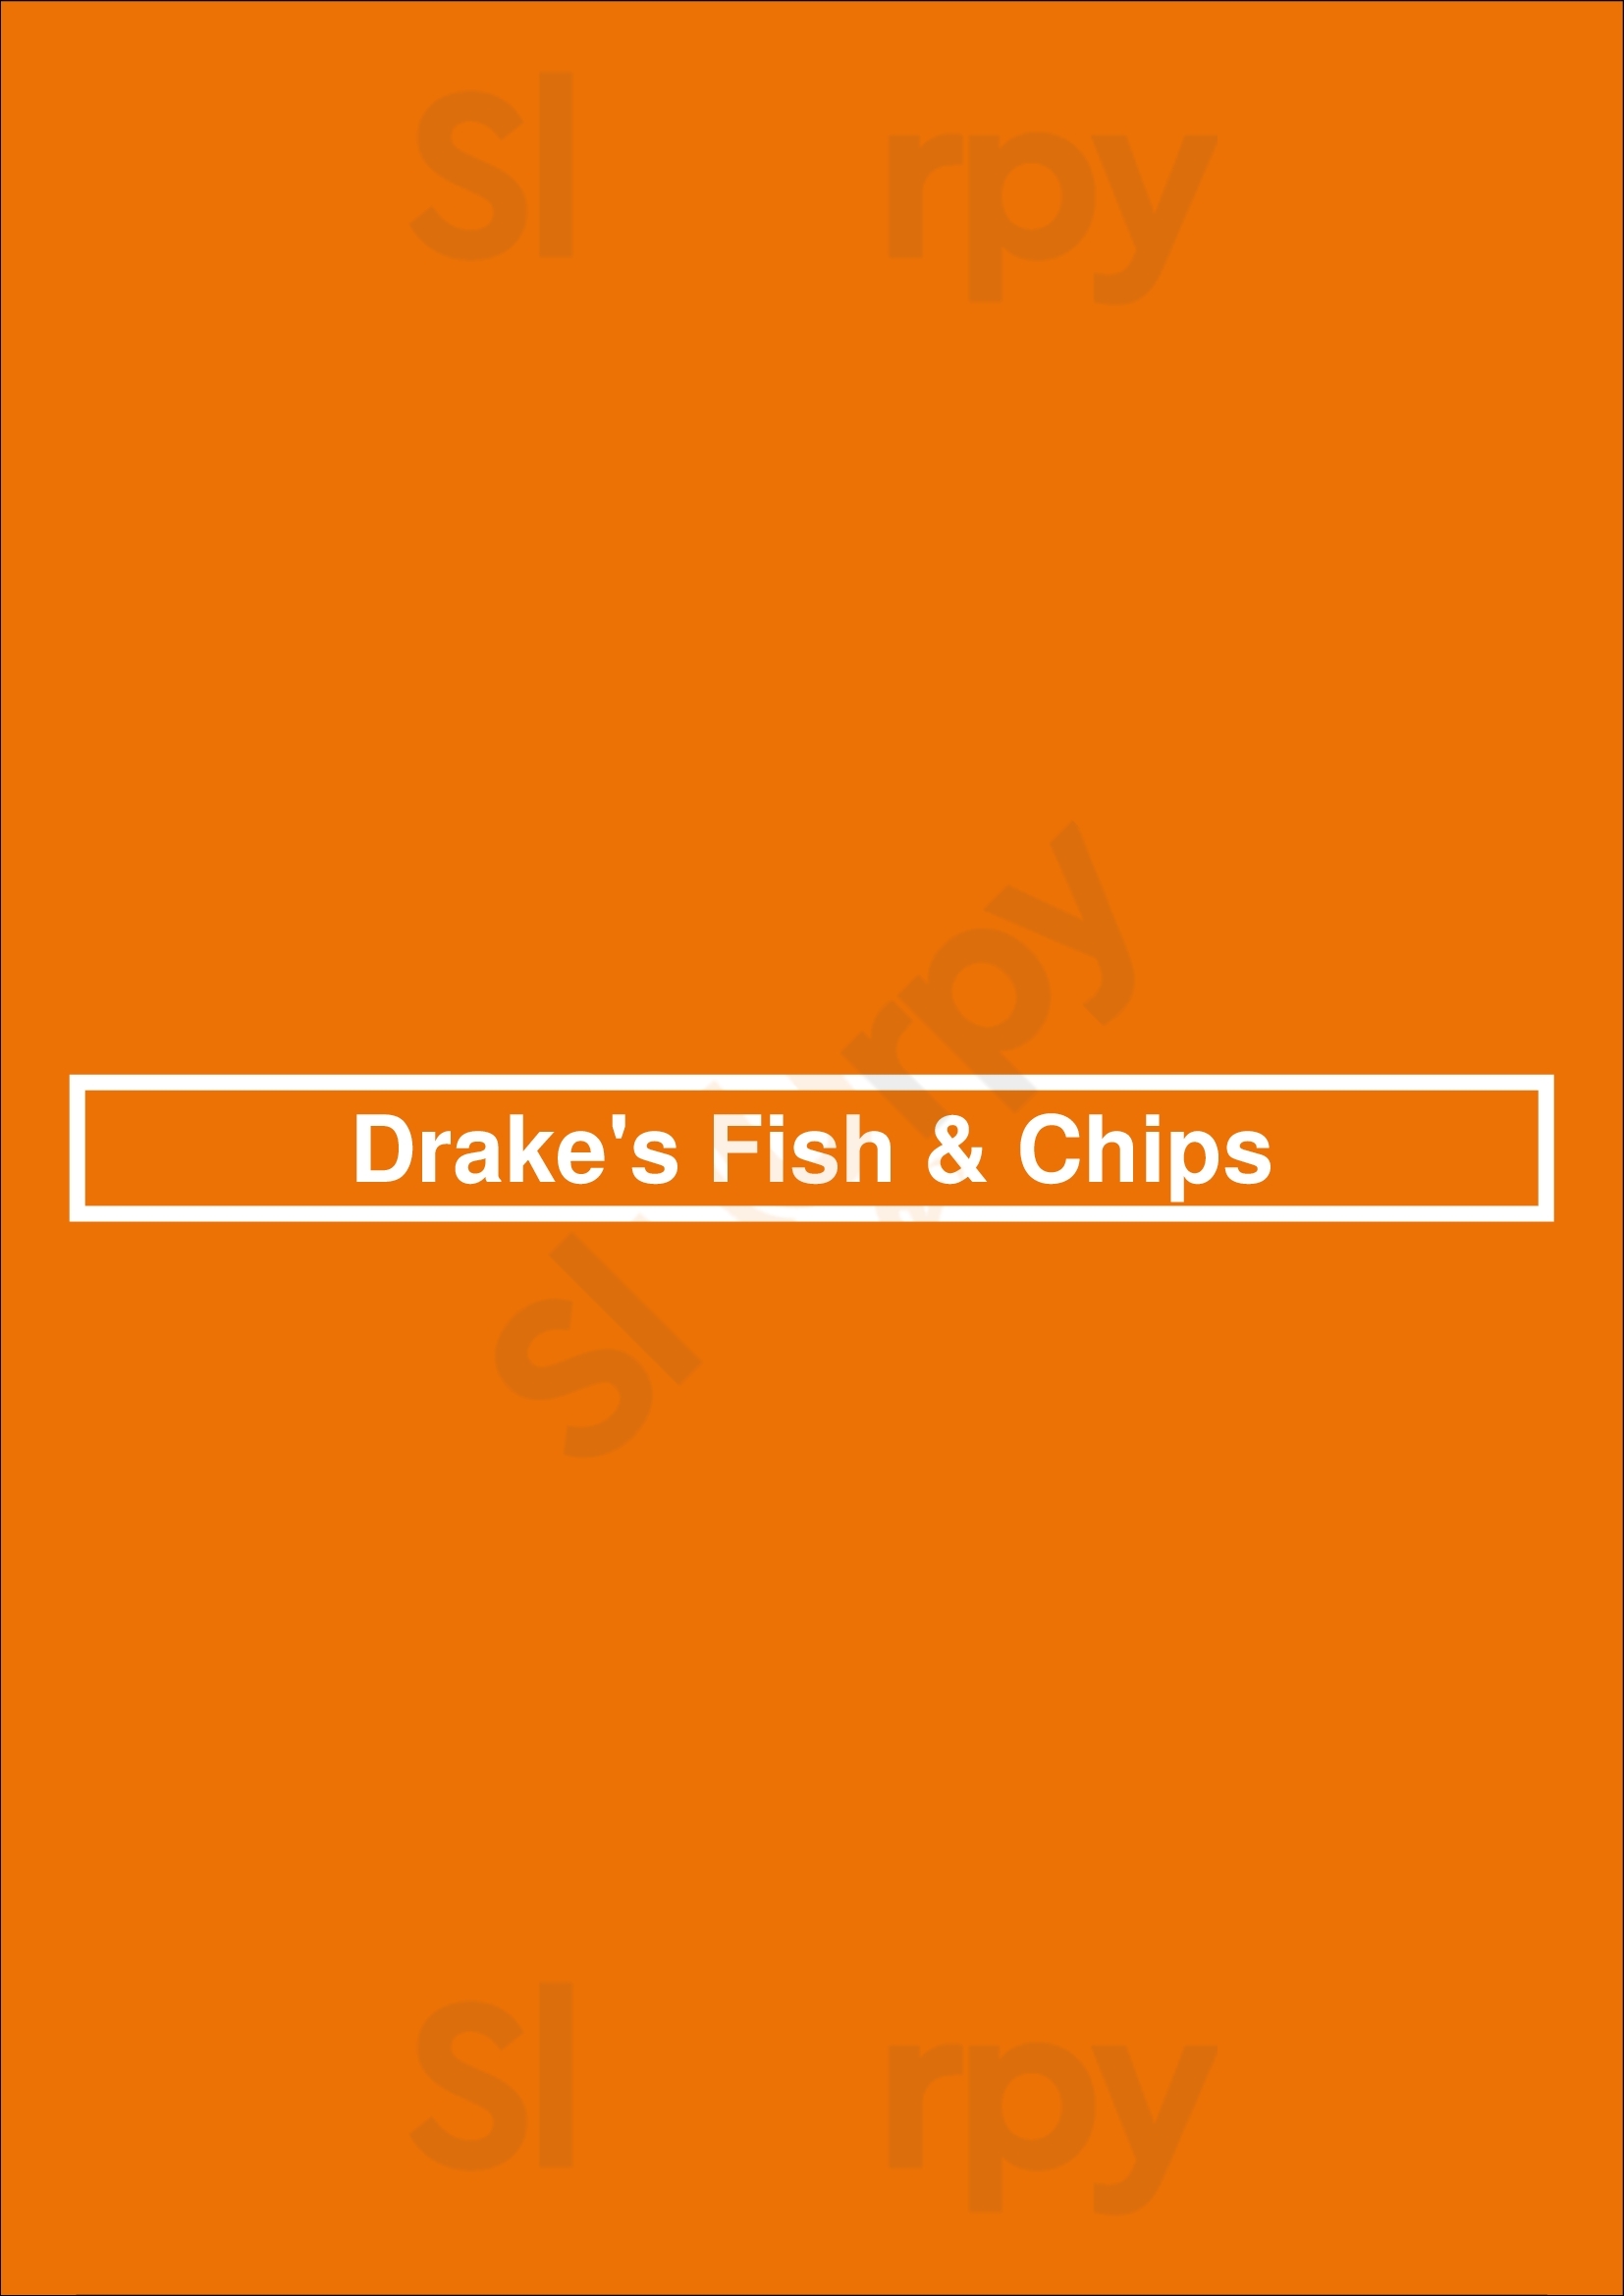 Drake's Fish & Chips Harrogate Menu - 1